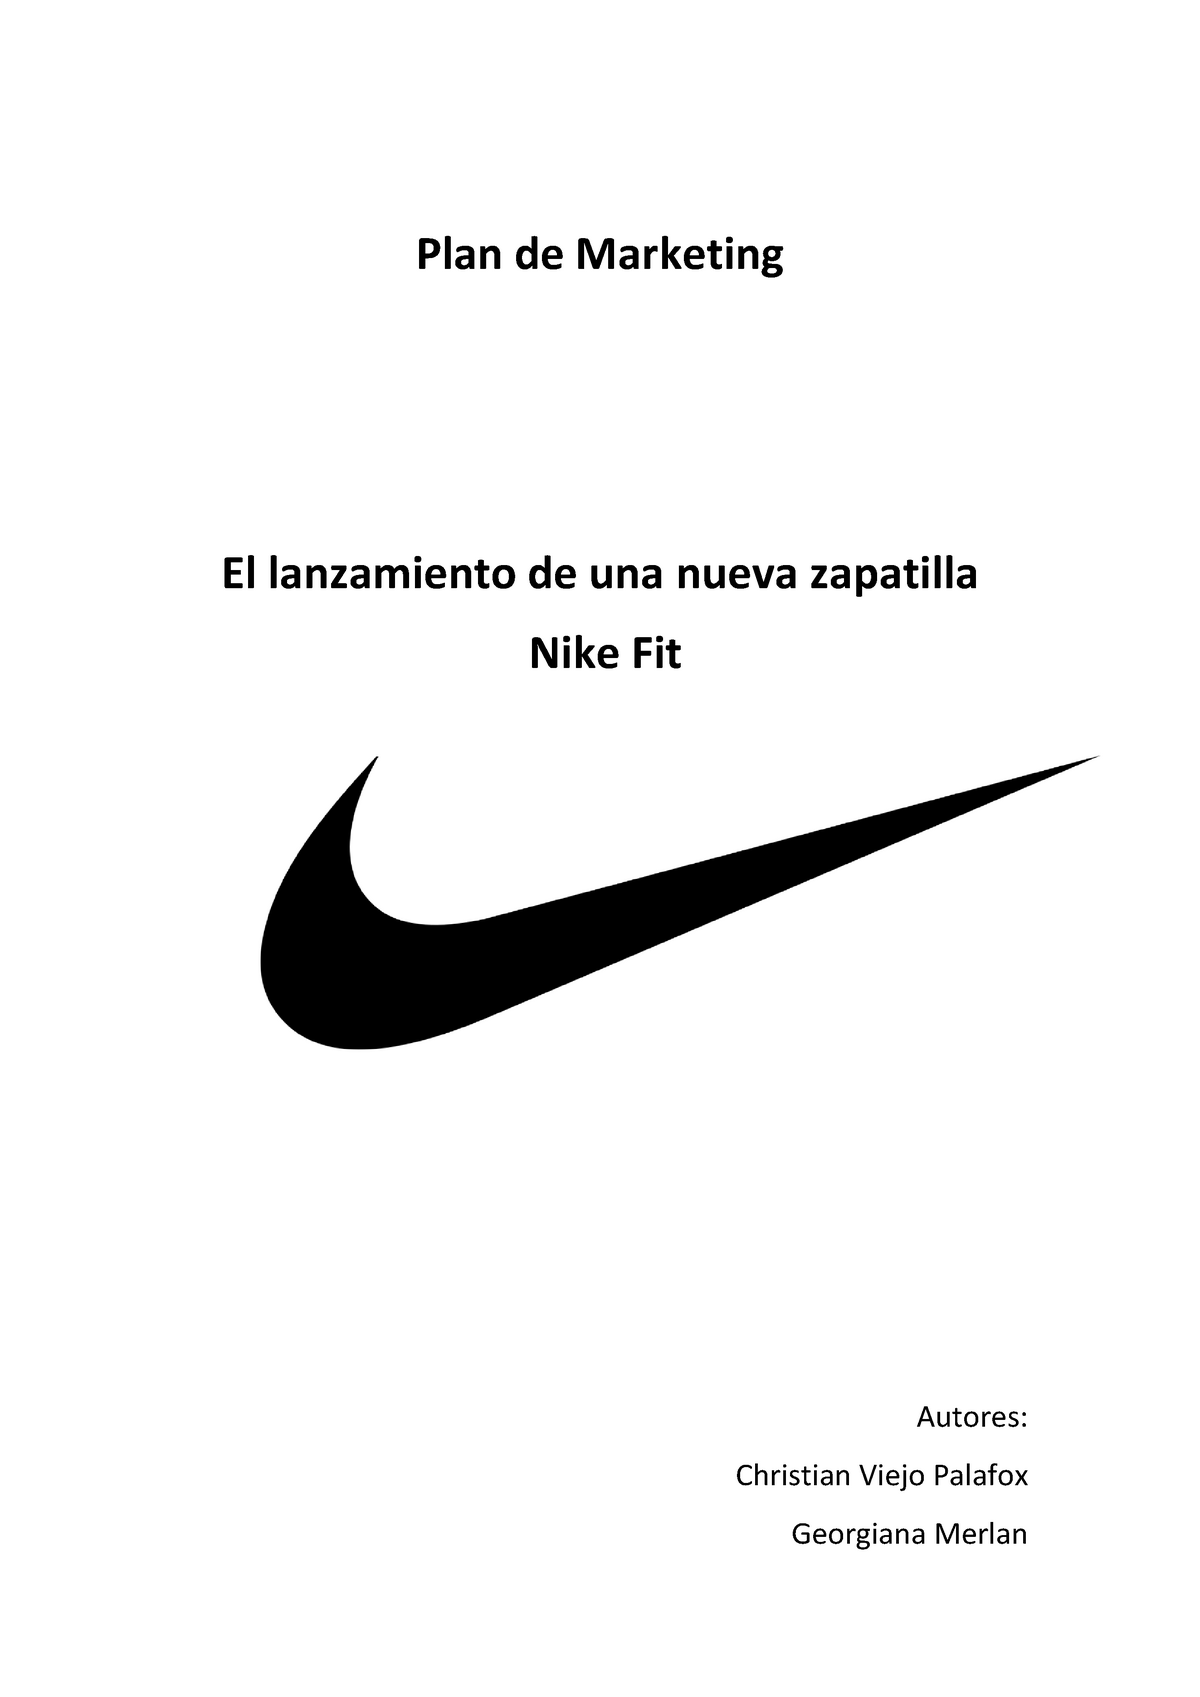 Plan de Nike Fit - Plan de Marketing de una nueva zapatilla Nike - Studocu